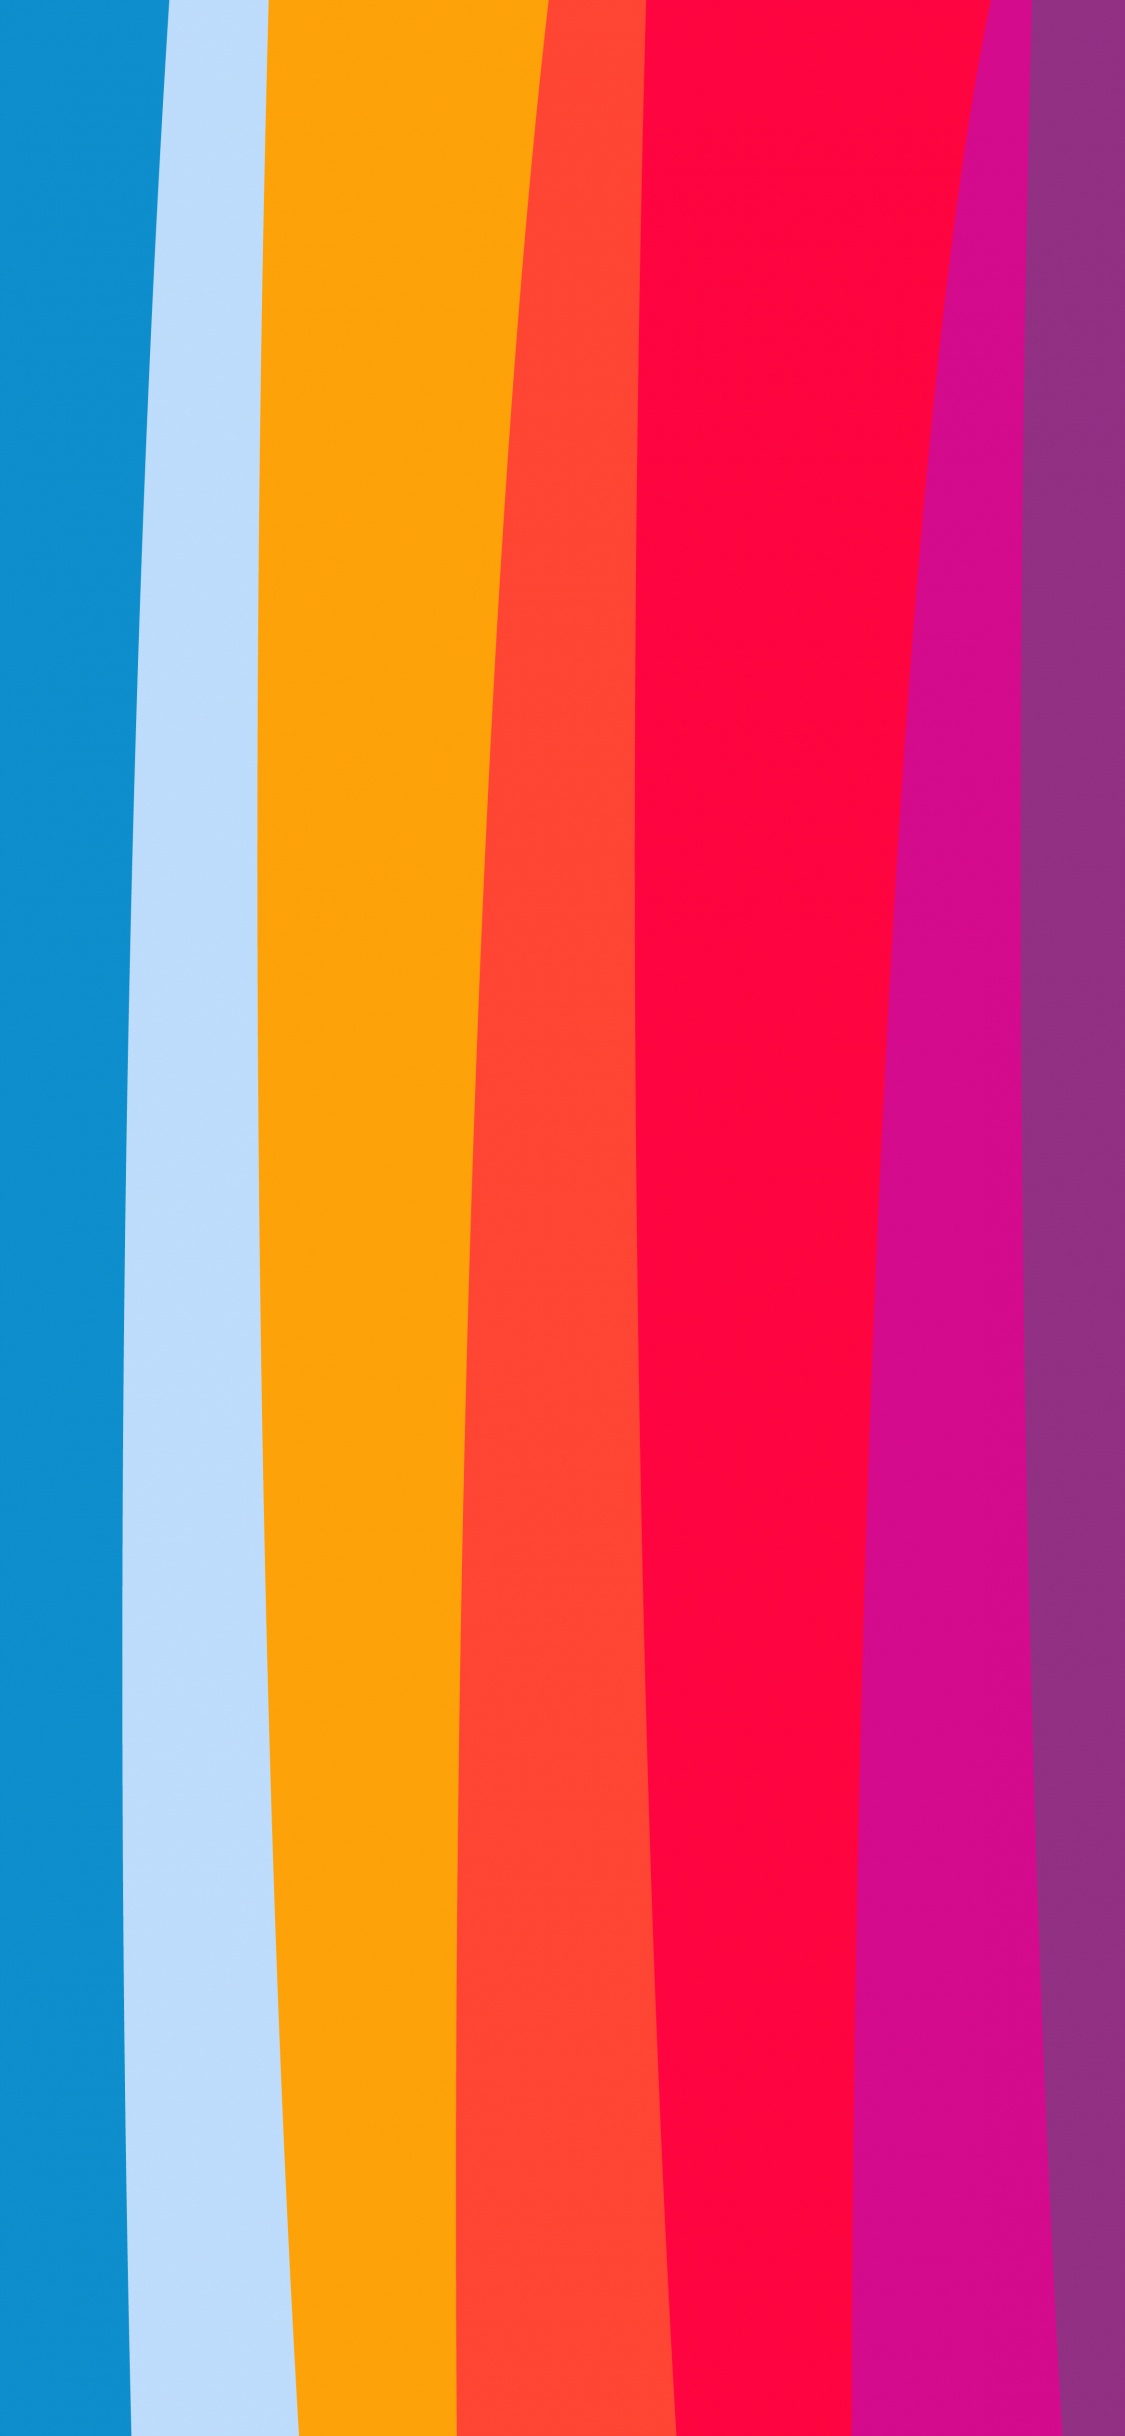 Orange, Apple, la Pureté de la Couleur, Blue, Purple. Wallpaper in 1125x2436 Resolution